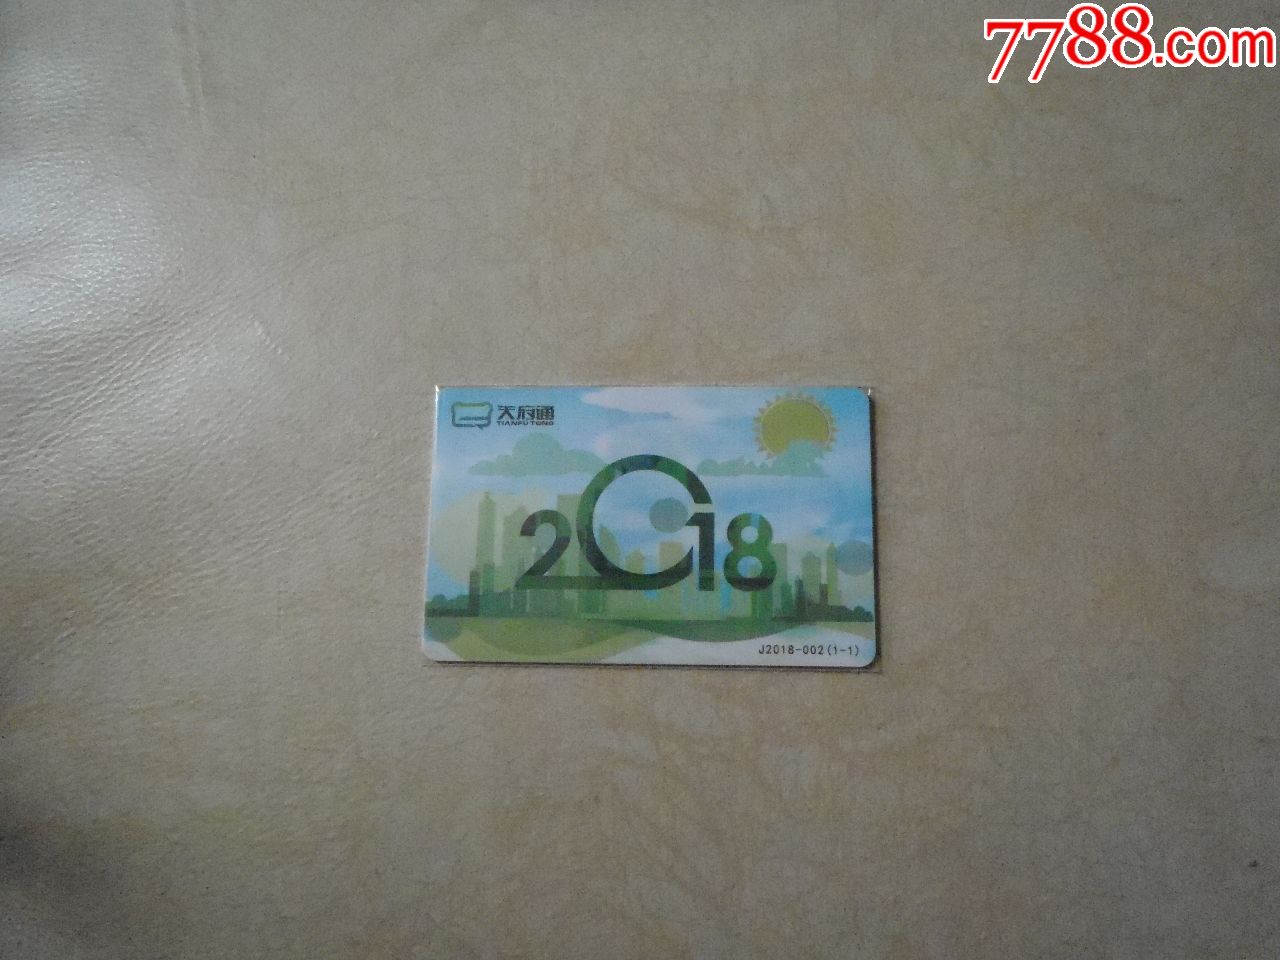 成都天府通公交卡:2018-002